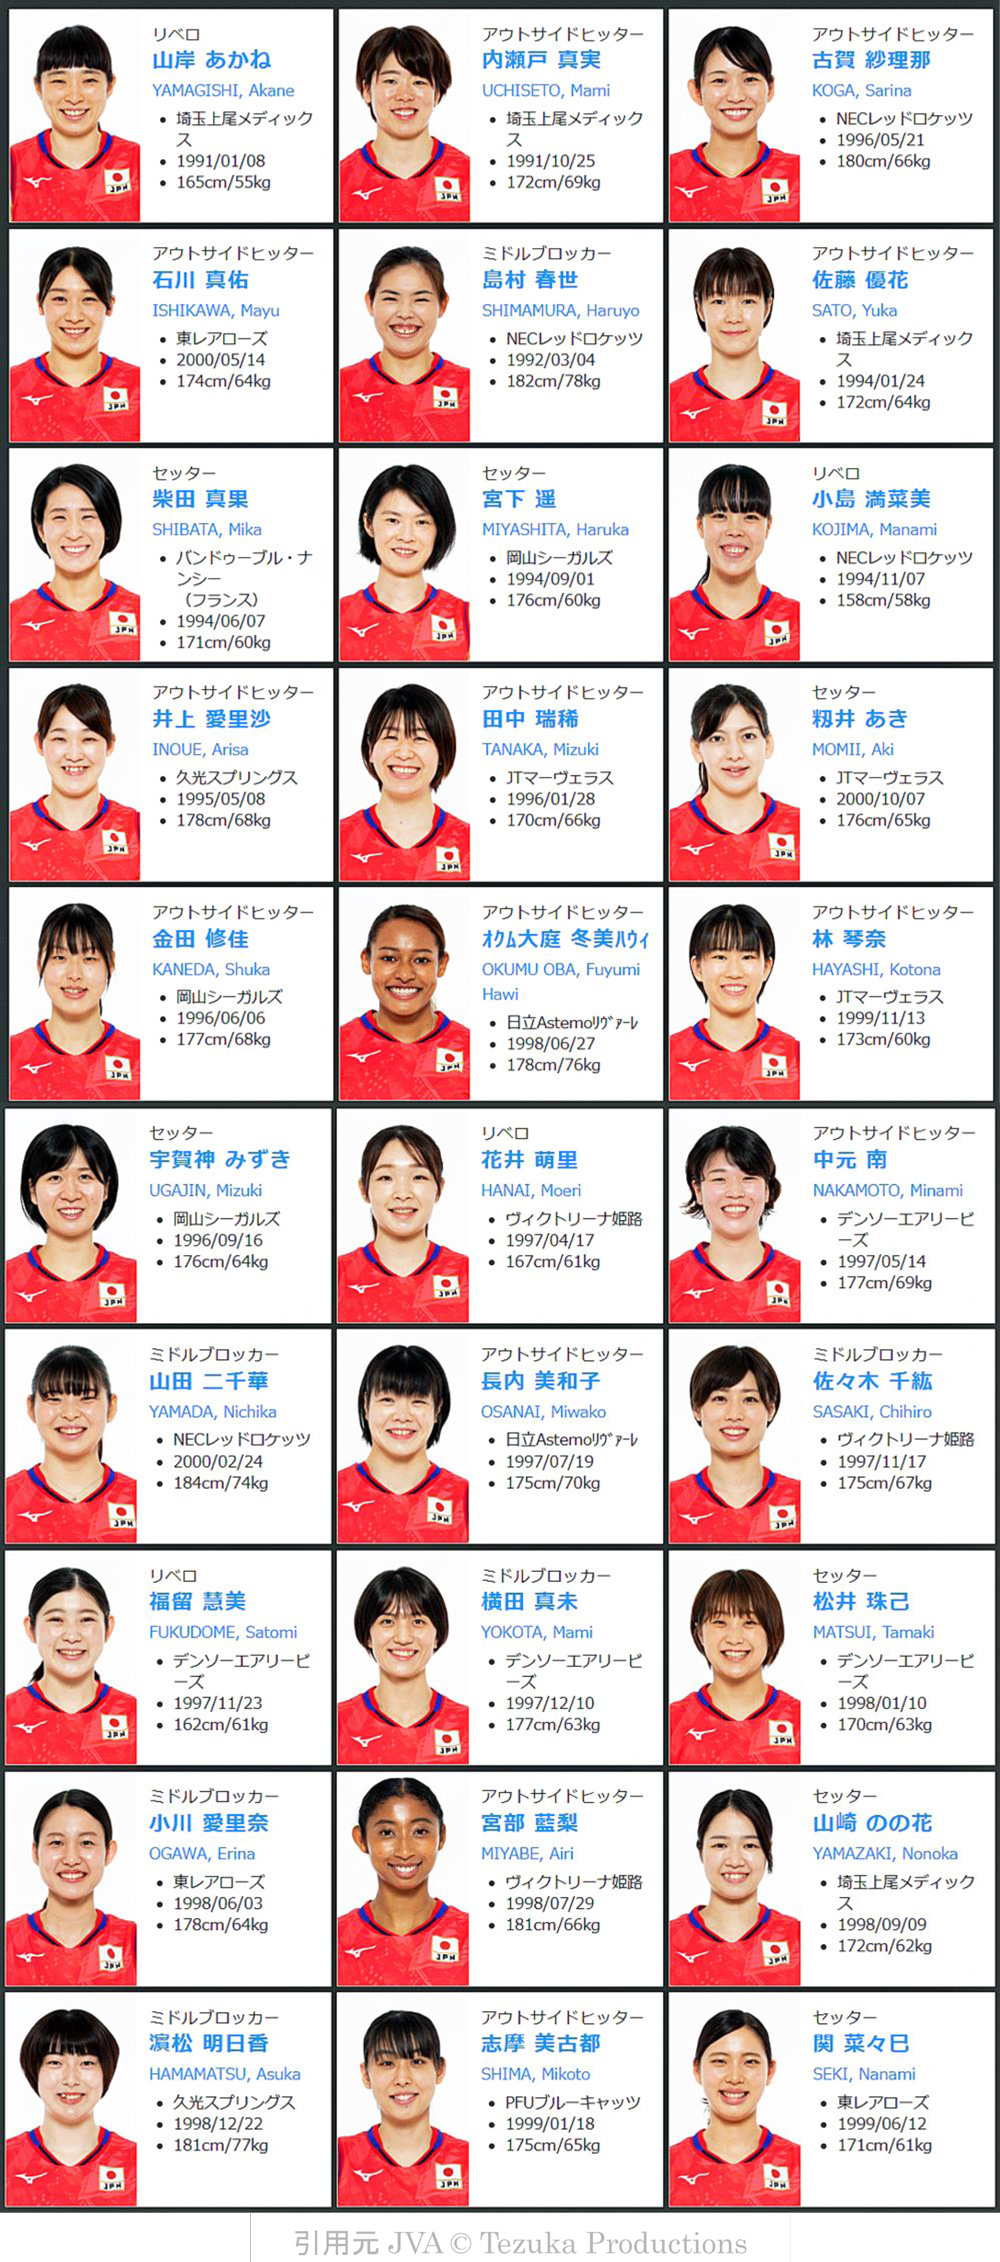 2022年度バレーボール女子全日本代表登録選手メンバー